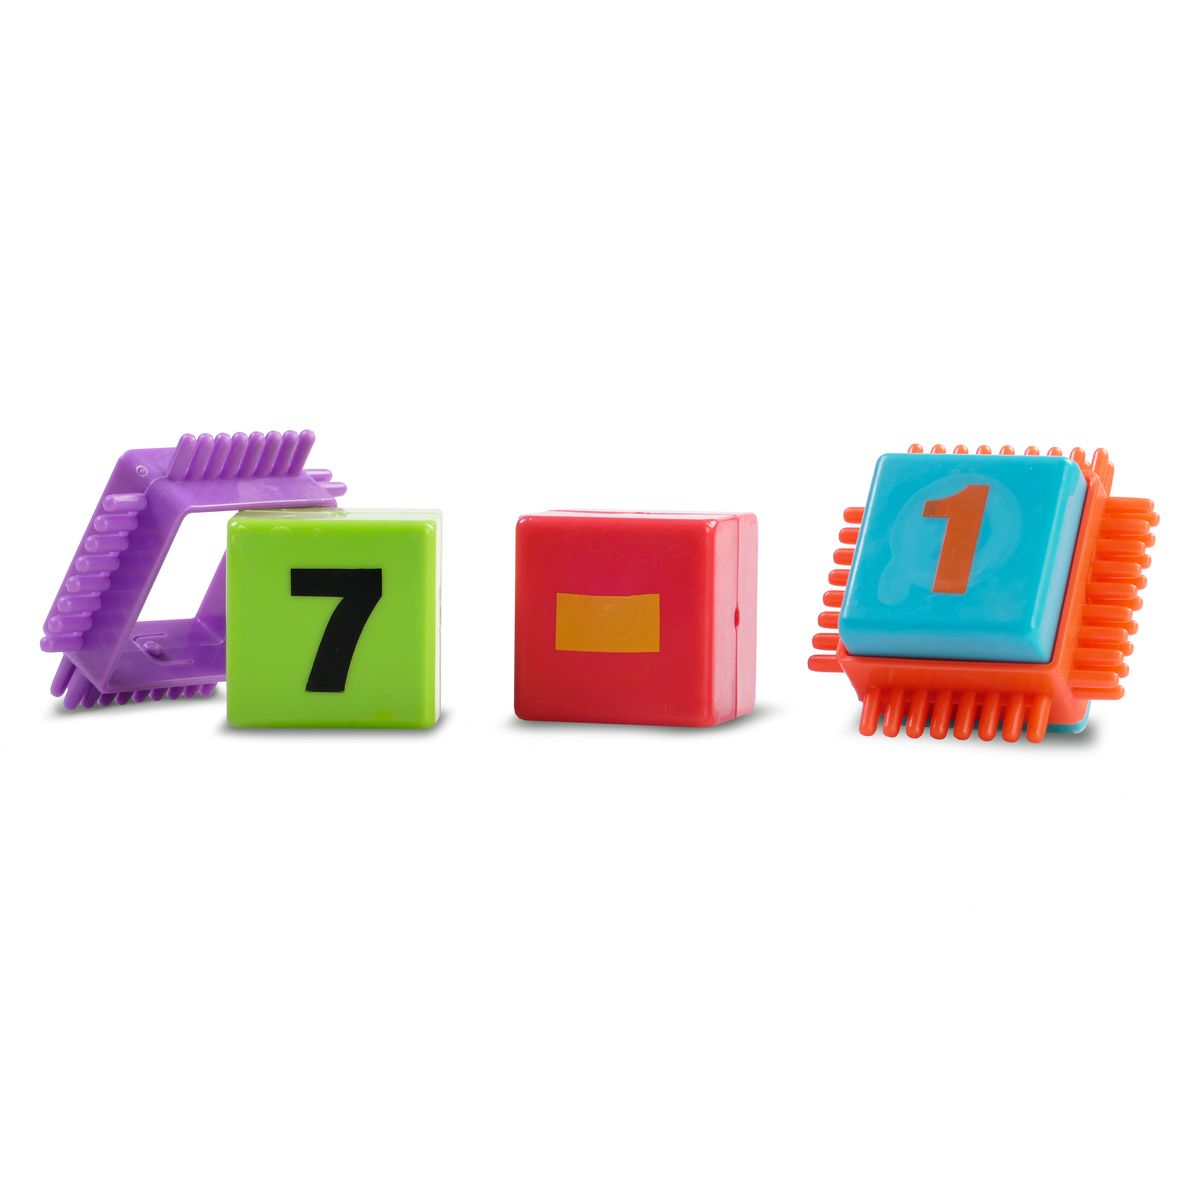 Klocki plastikowe Artyk Spiky 86 elementów (128981)